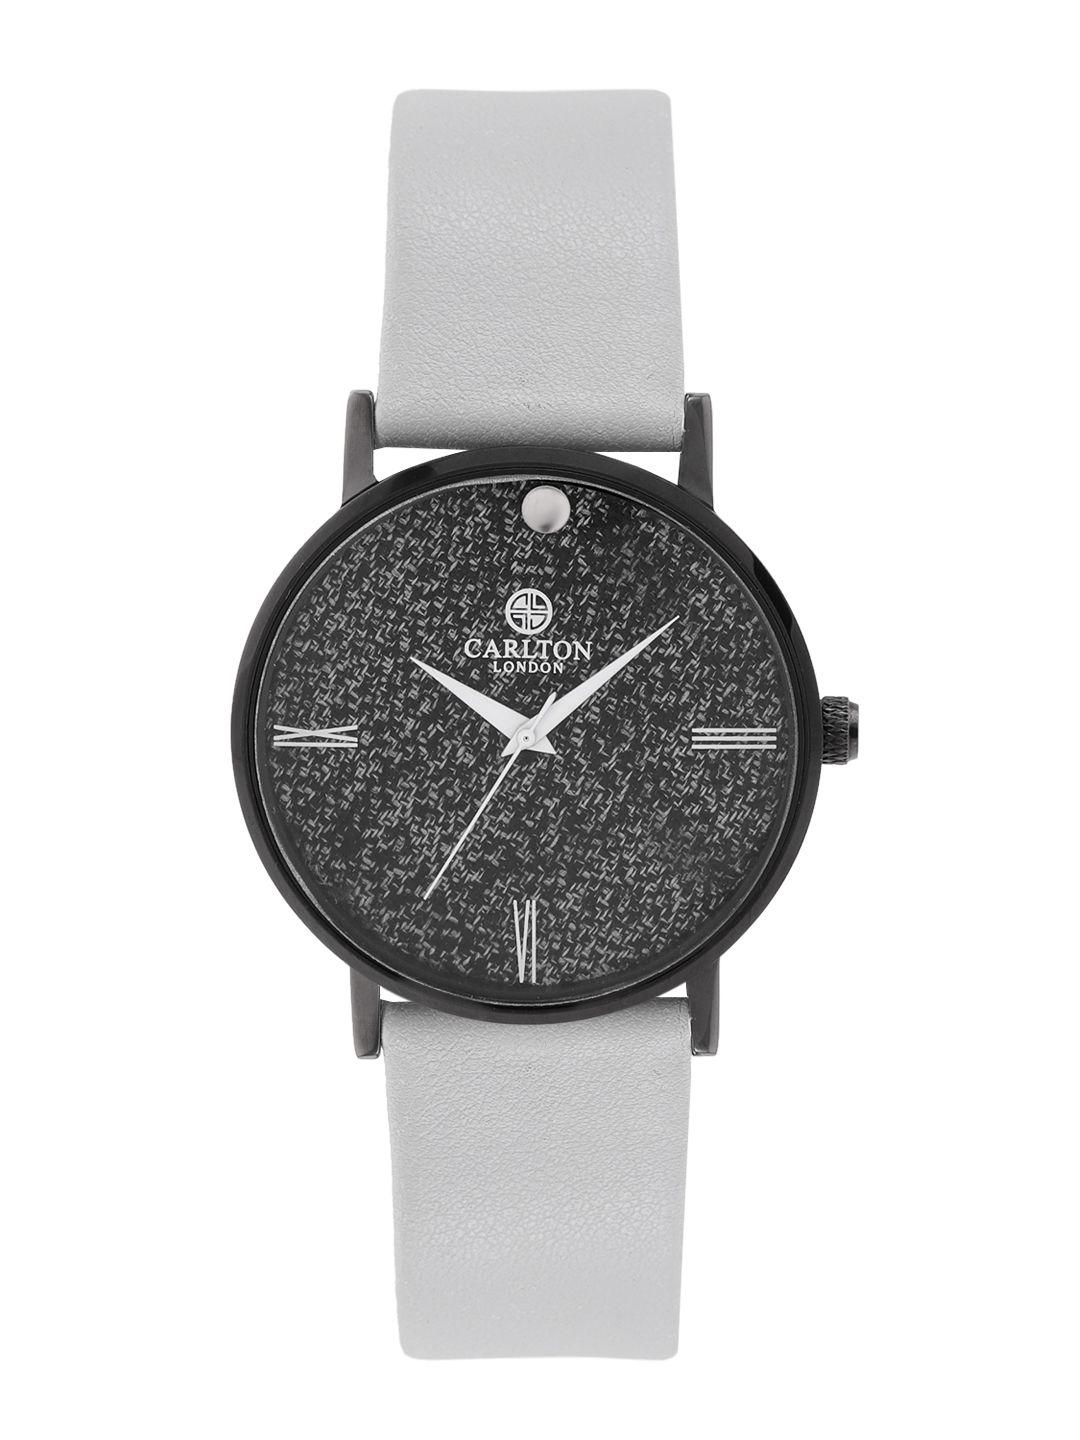 carlton-london-men-charcoal-grey-analogue-watch-cl066bl3